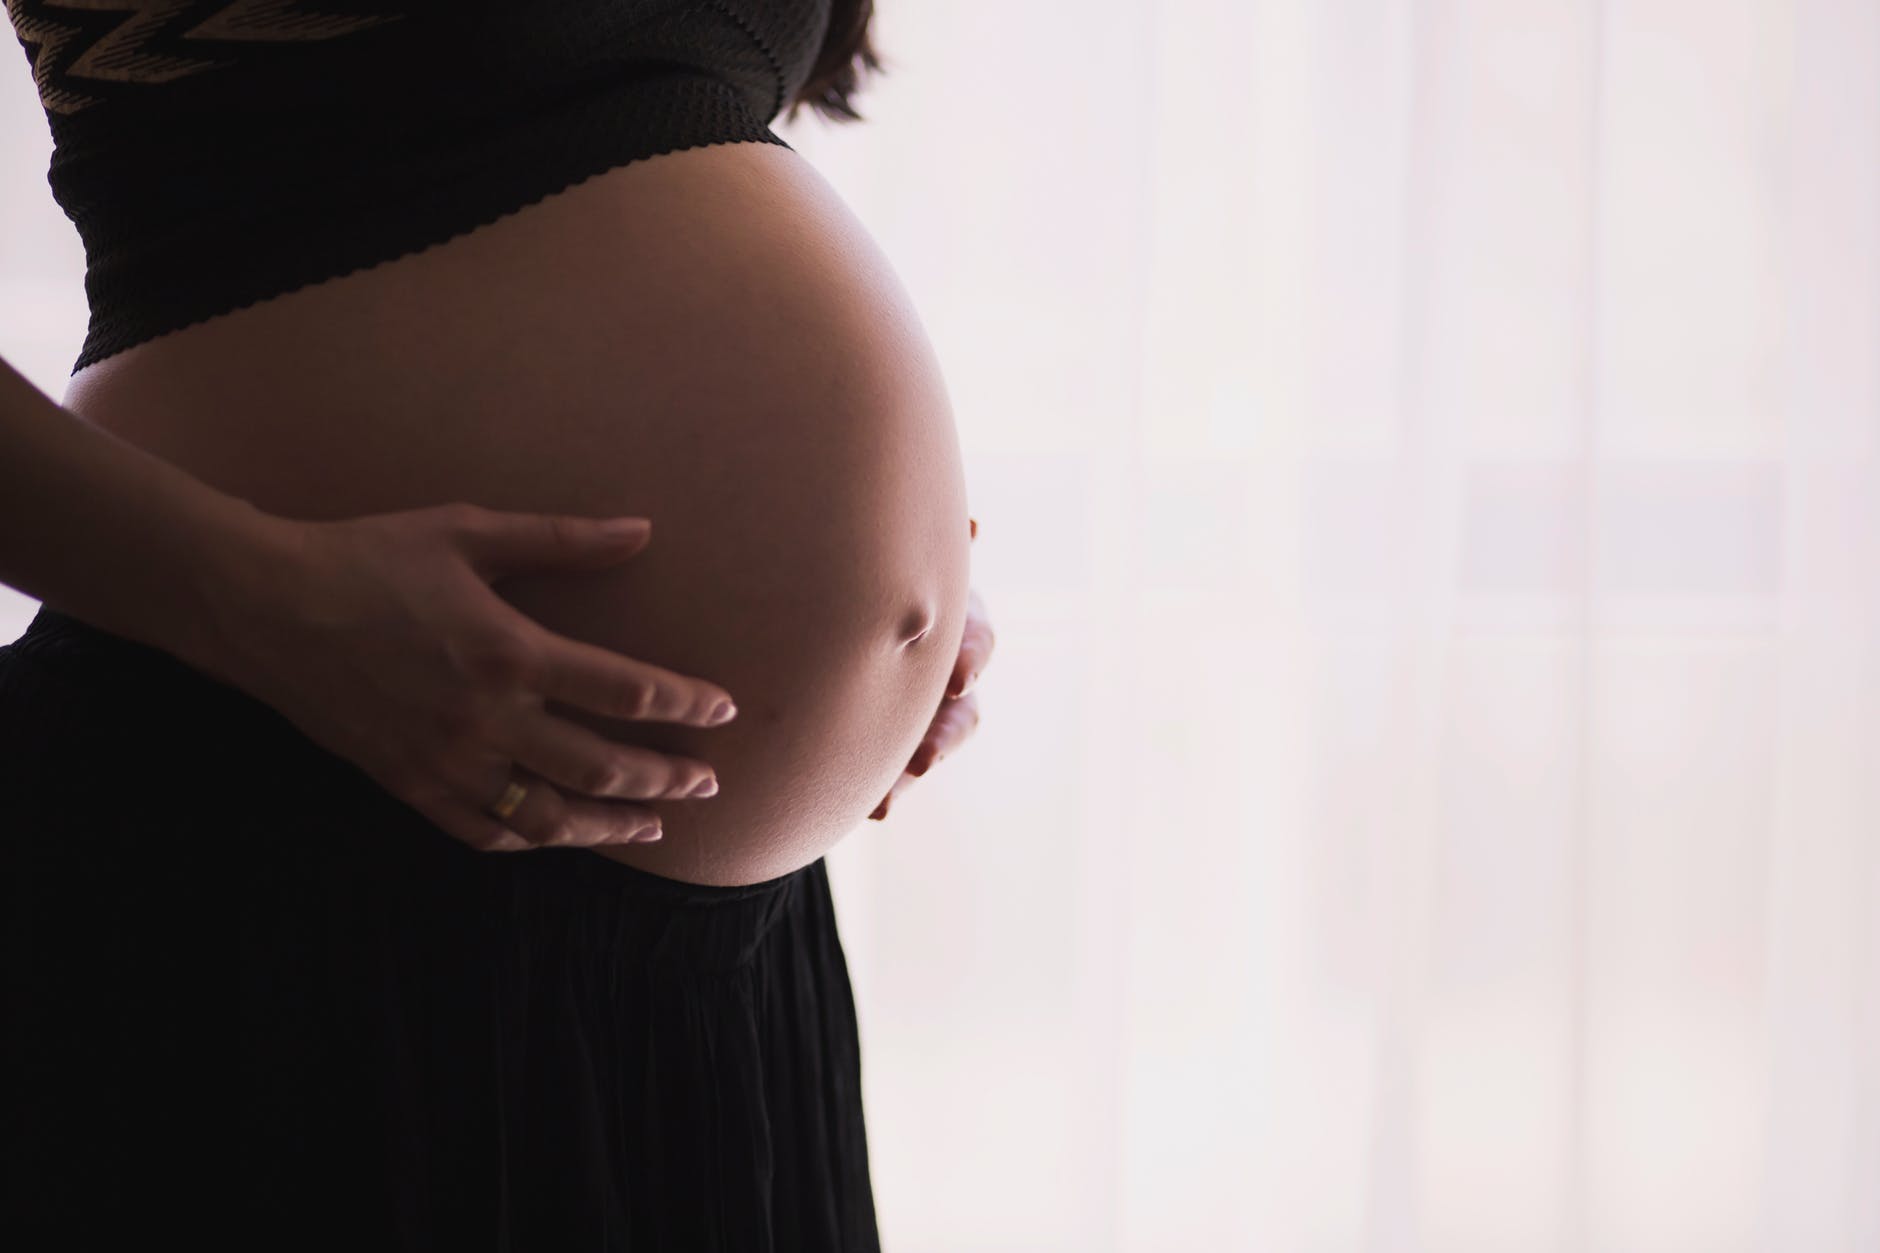 10 τροφές που απαγορεύονται στην εγκυμοσύνη και το θηλασμό